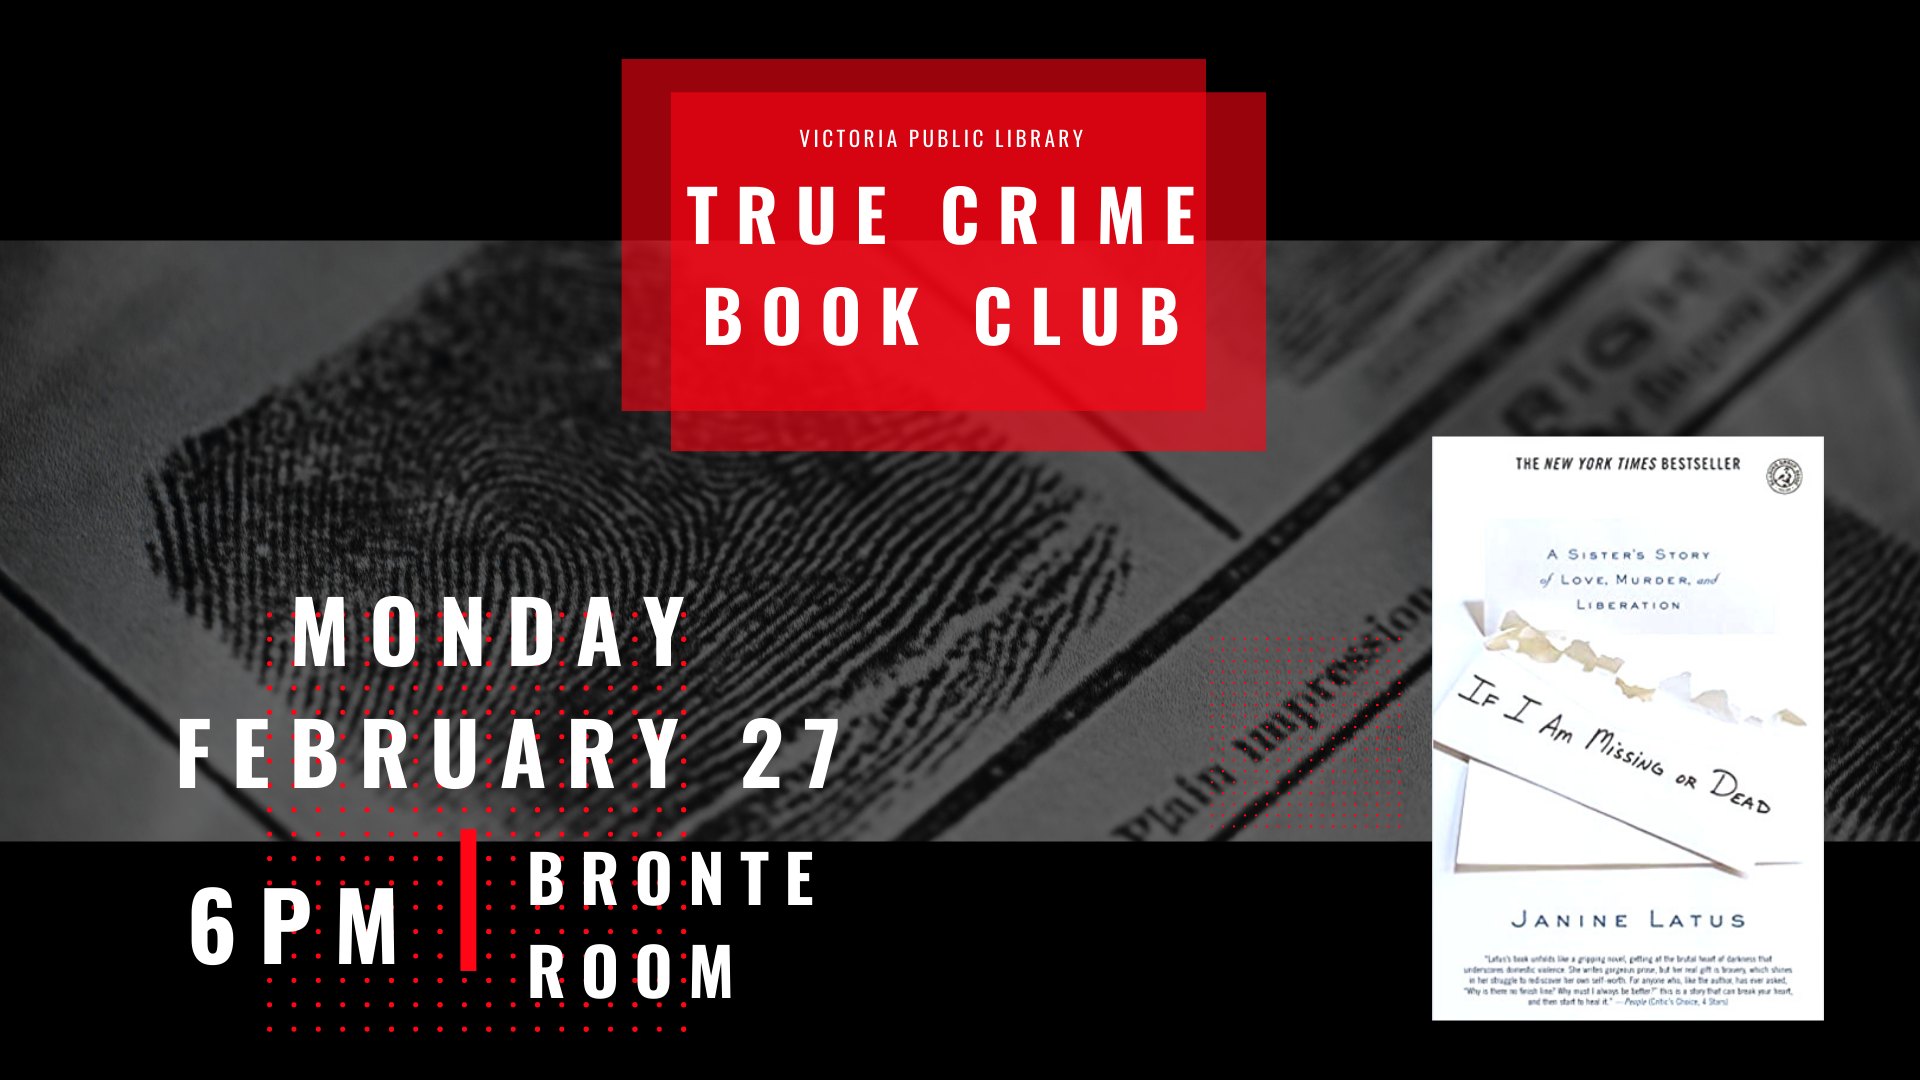 True Crime Book Club, February 27th at 6pm